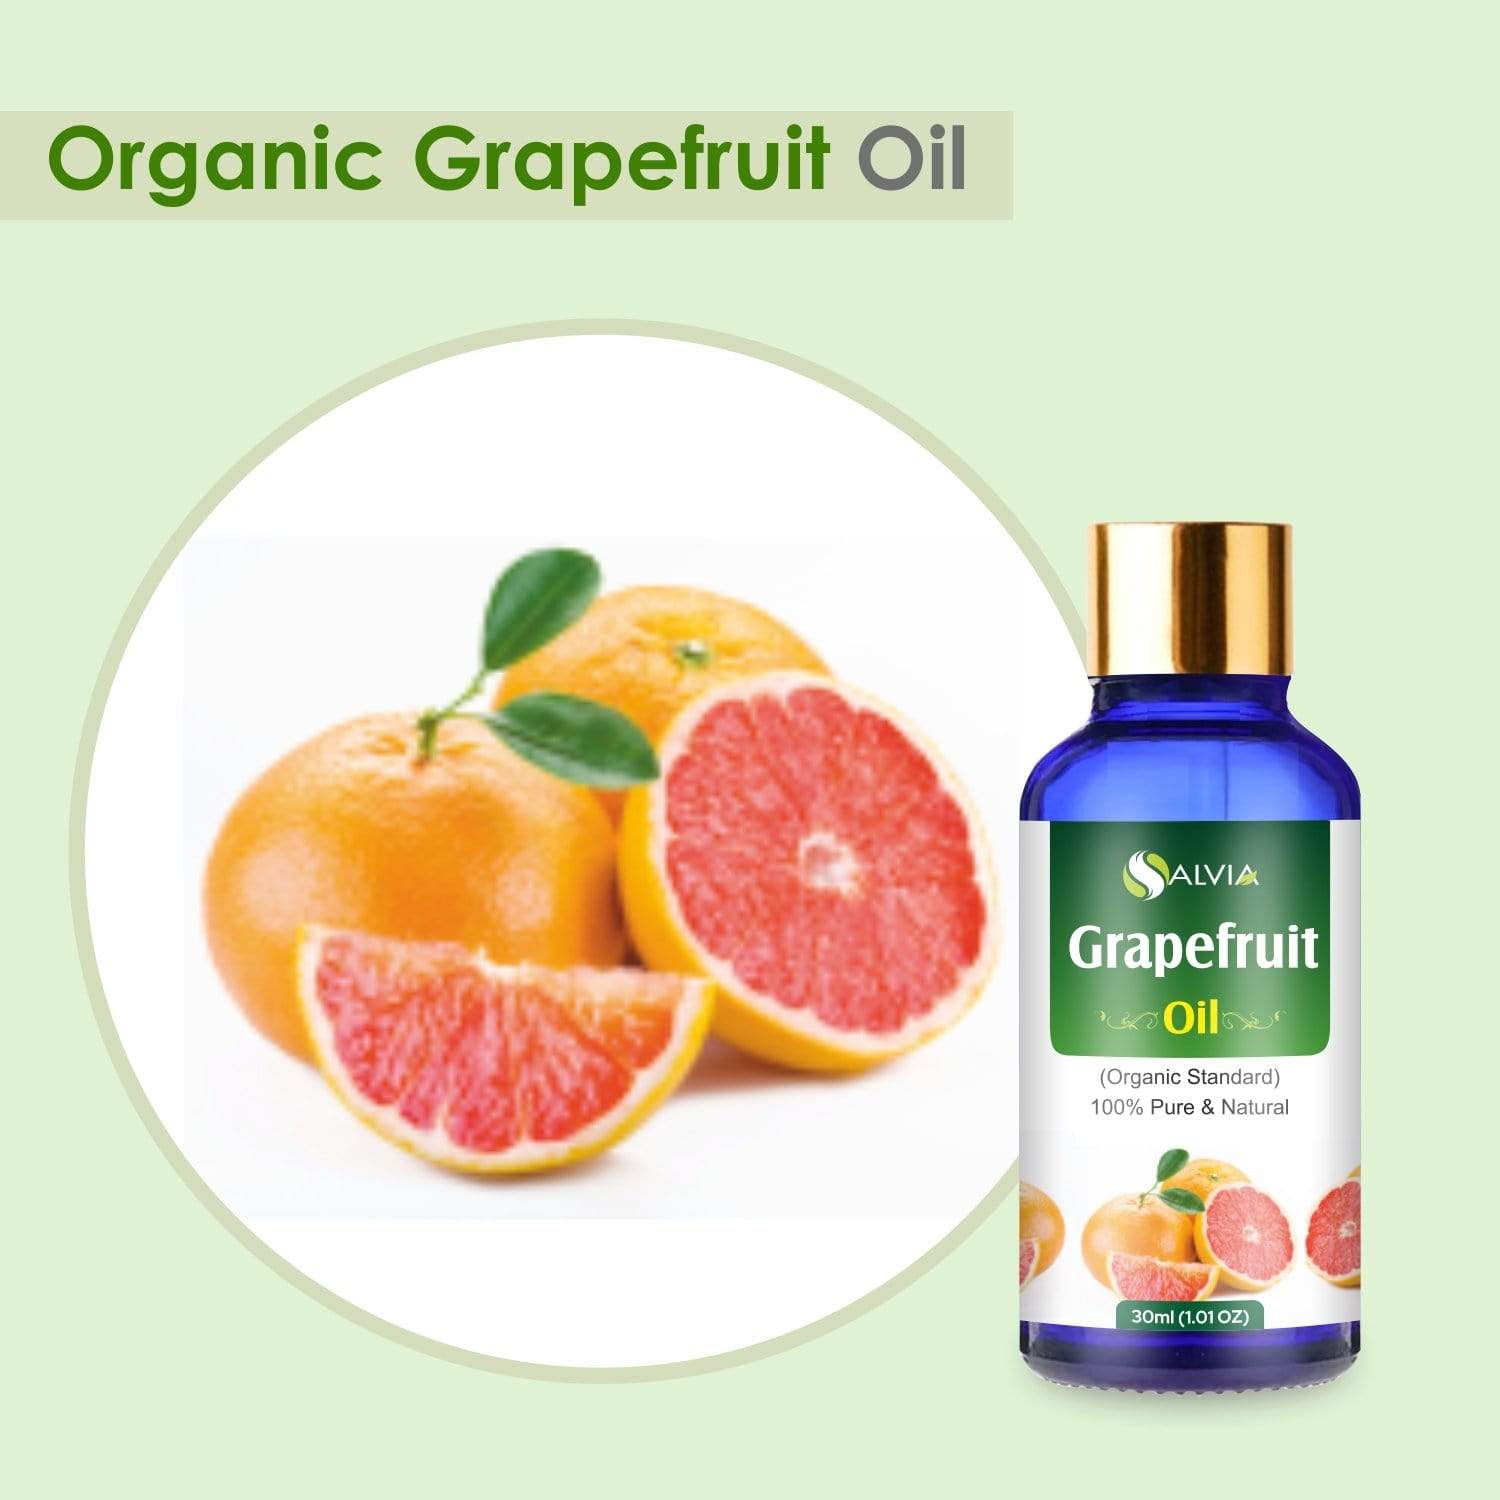 Organic Grapefruit Essential Oil benefits 